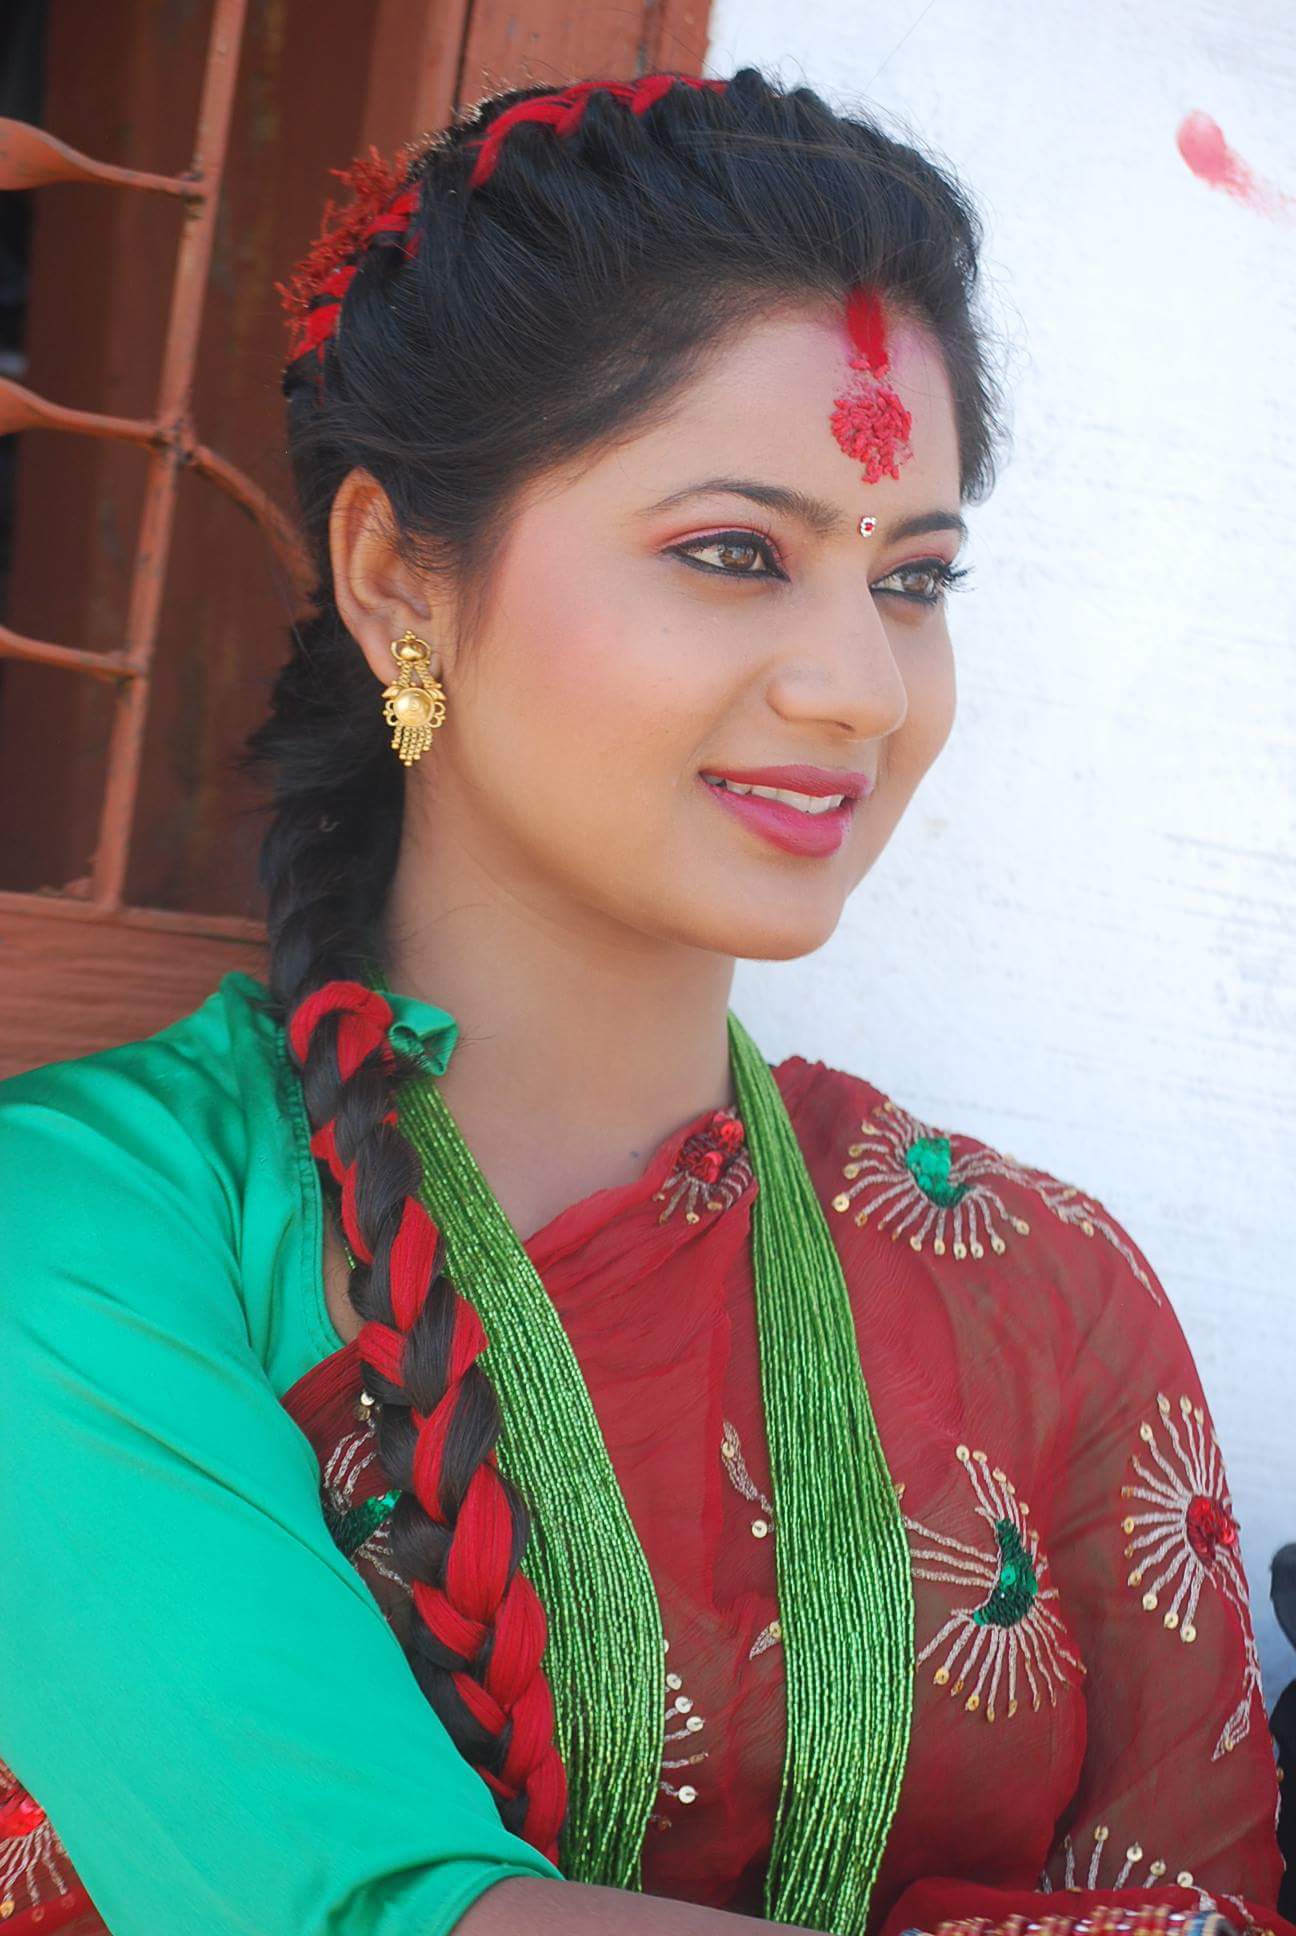 Nitya for her sister's teej function ✨🤍 Makeup - @makeupandhairbypurvi  #makeupandhairbypurvi #makeup #hairstyle #makeupartist #h... | Instagram